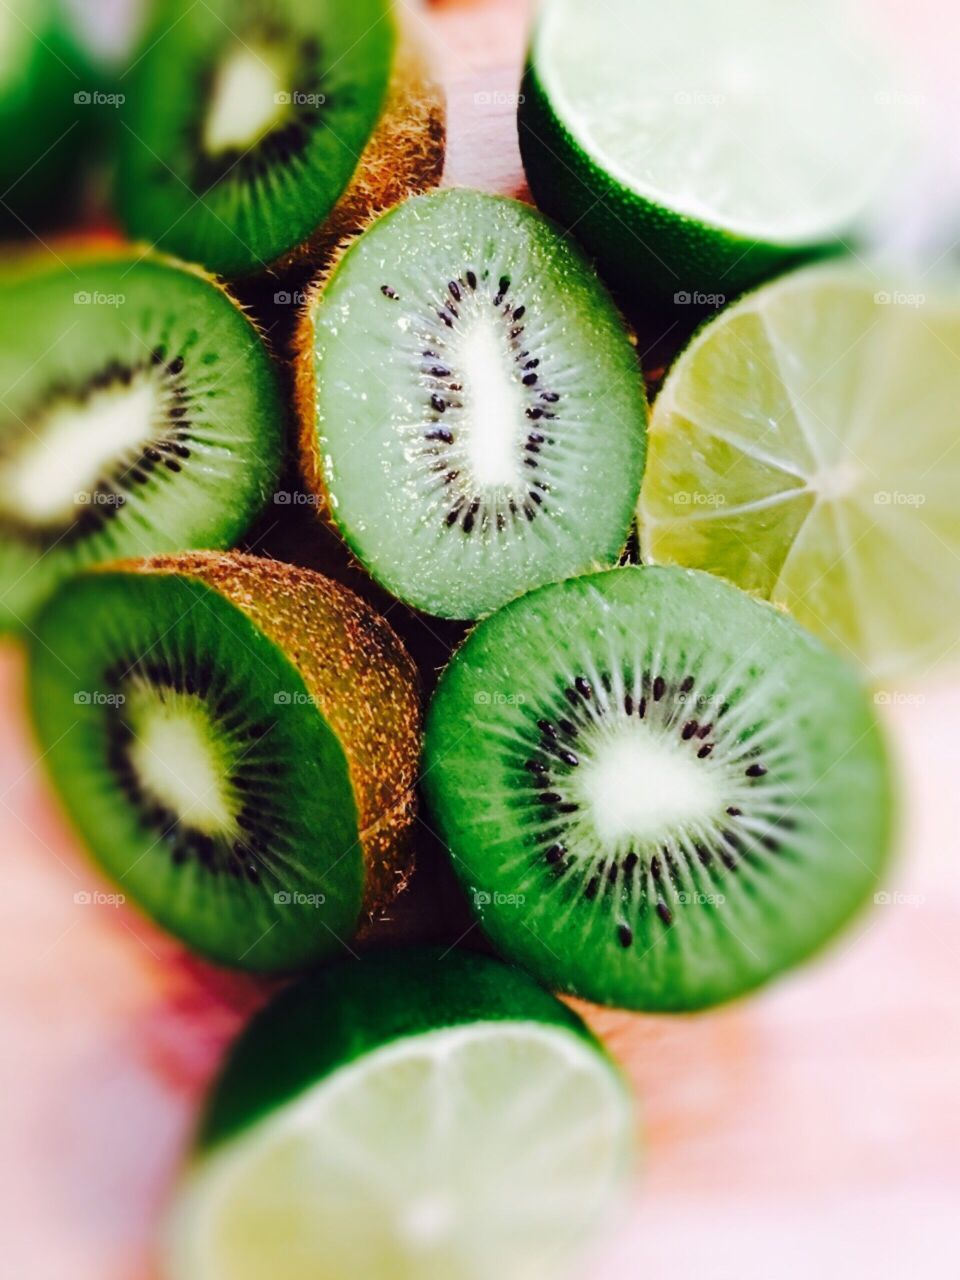 Kiwi and lime